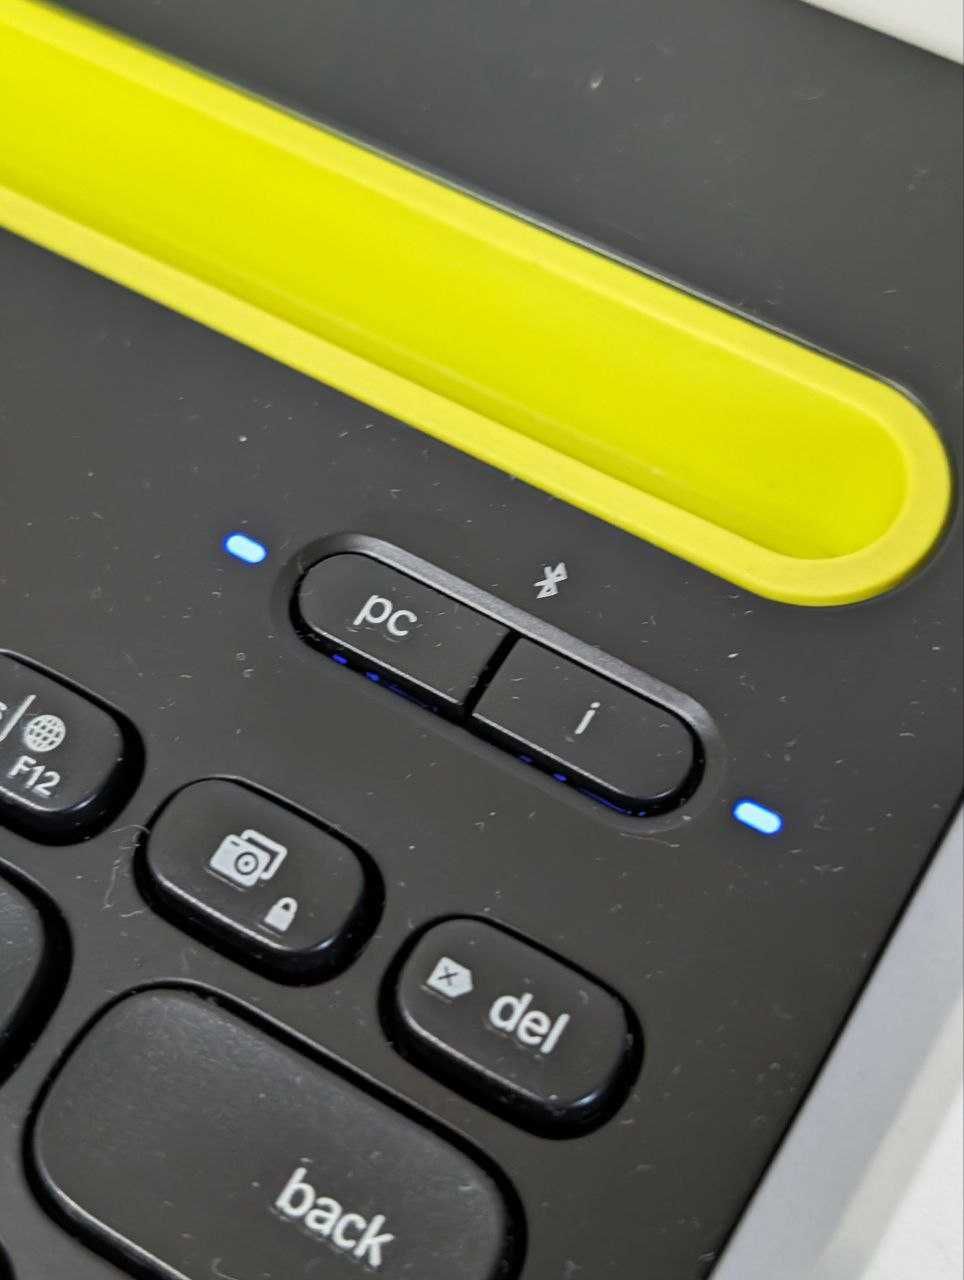 Беспроводная клавиатура для iPhone, iPad, Android смартфонов и для ПК.